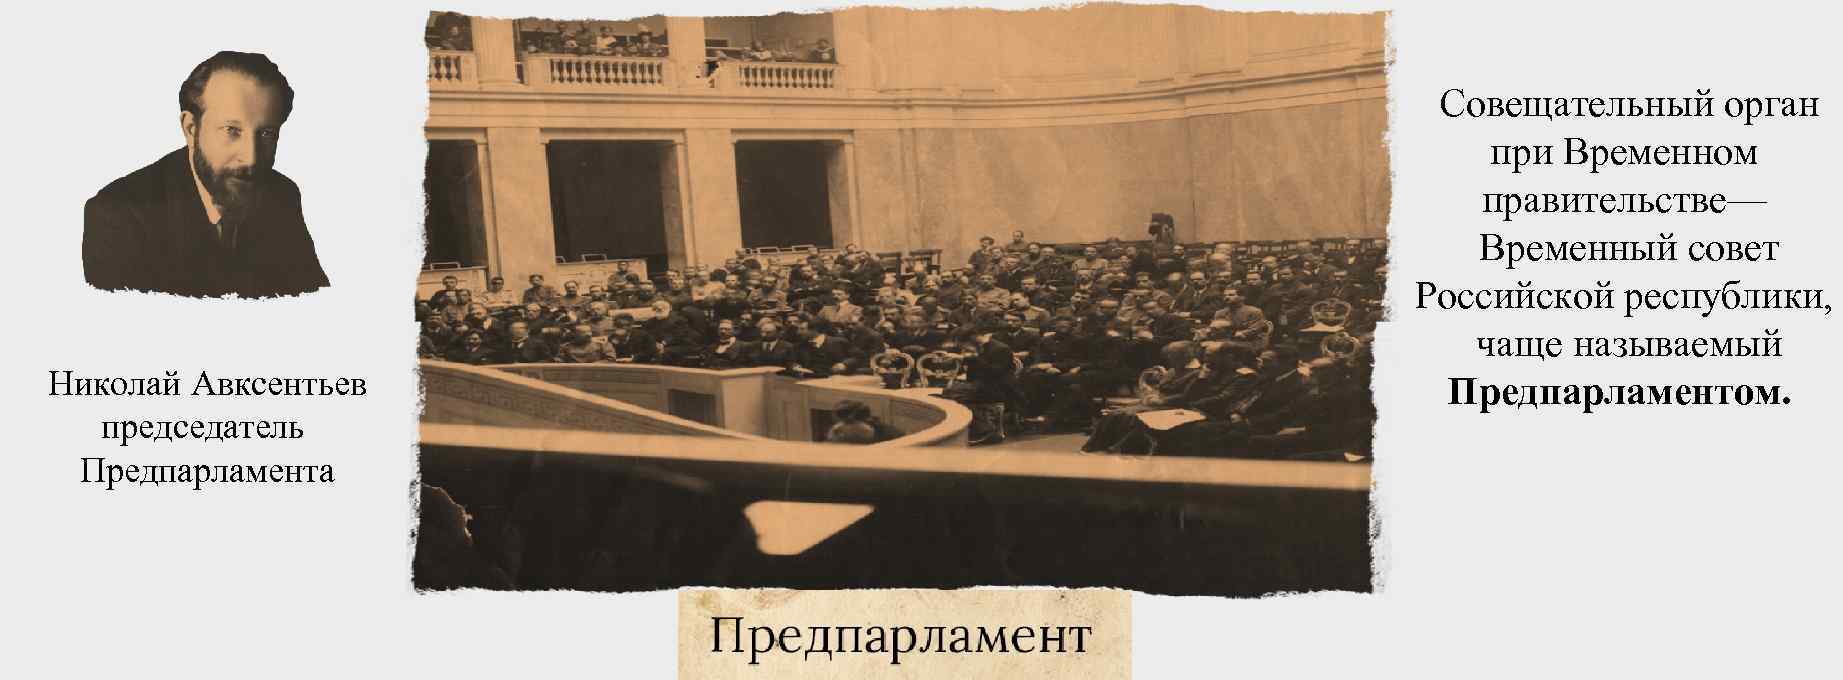 Временный совет Российской Республики 1917 это